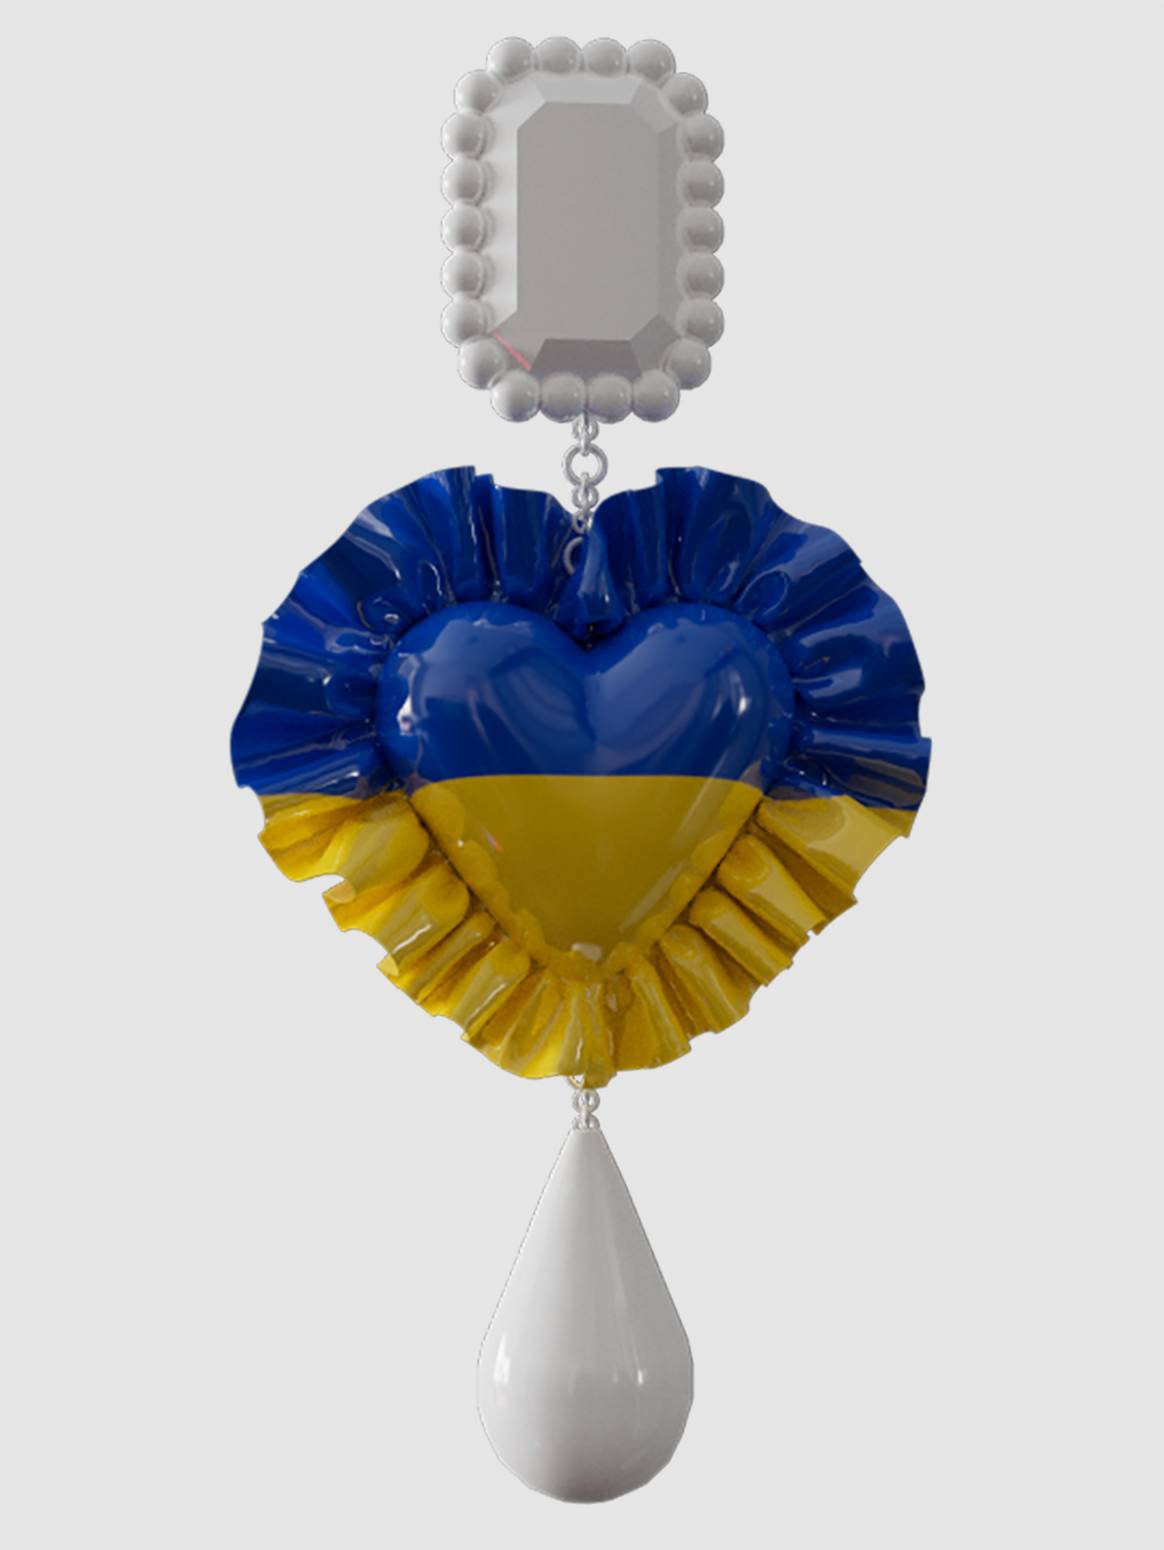 Foto: Support Ukraine Collection, DressX.